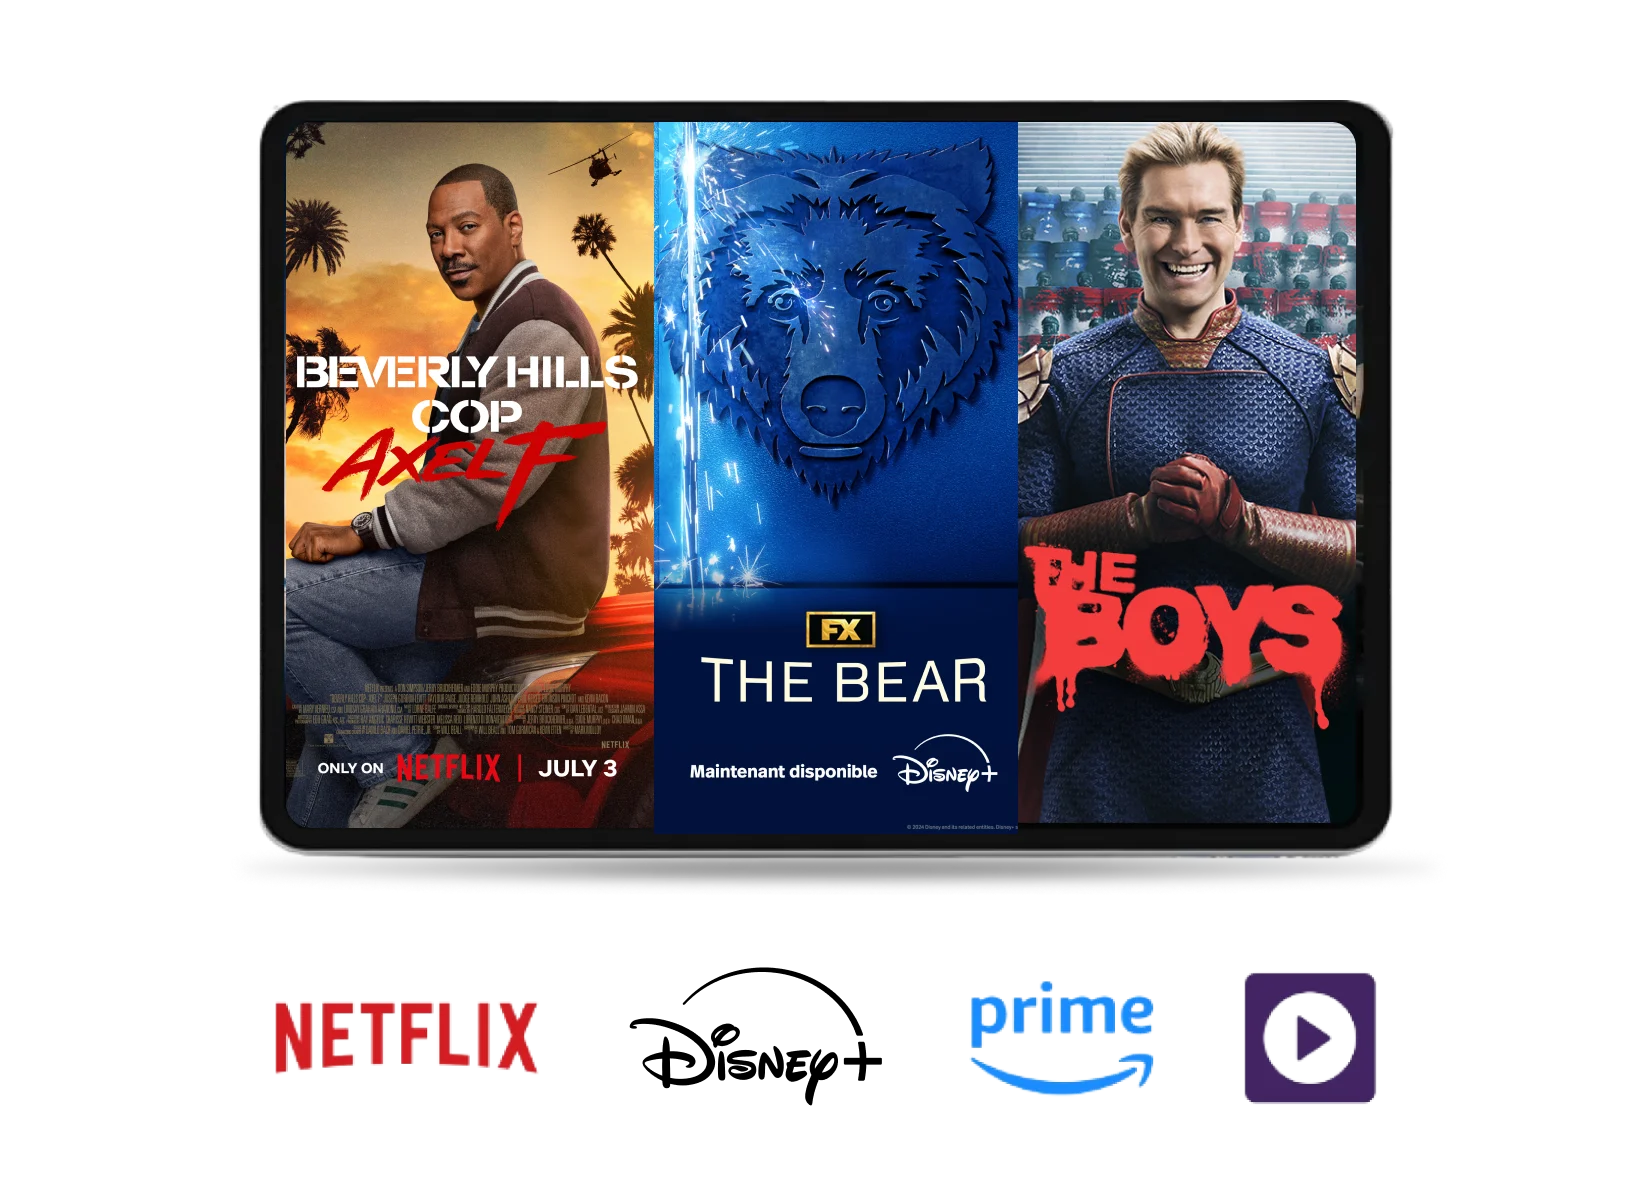 Un écran de tablette montrant Le Flic de Beverly Hills : Axel F de Netflix, The Bear de Disney+ et The Boys de Prime Video.